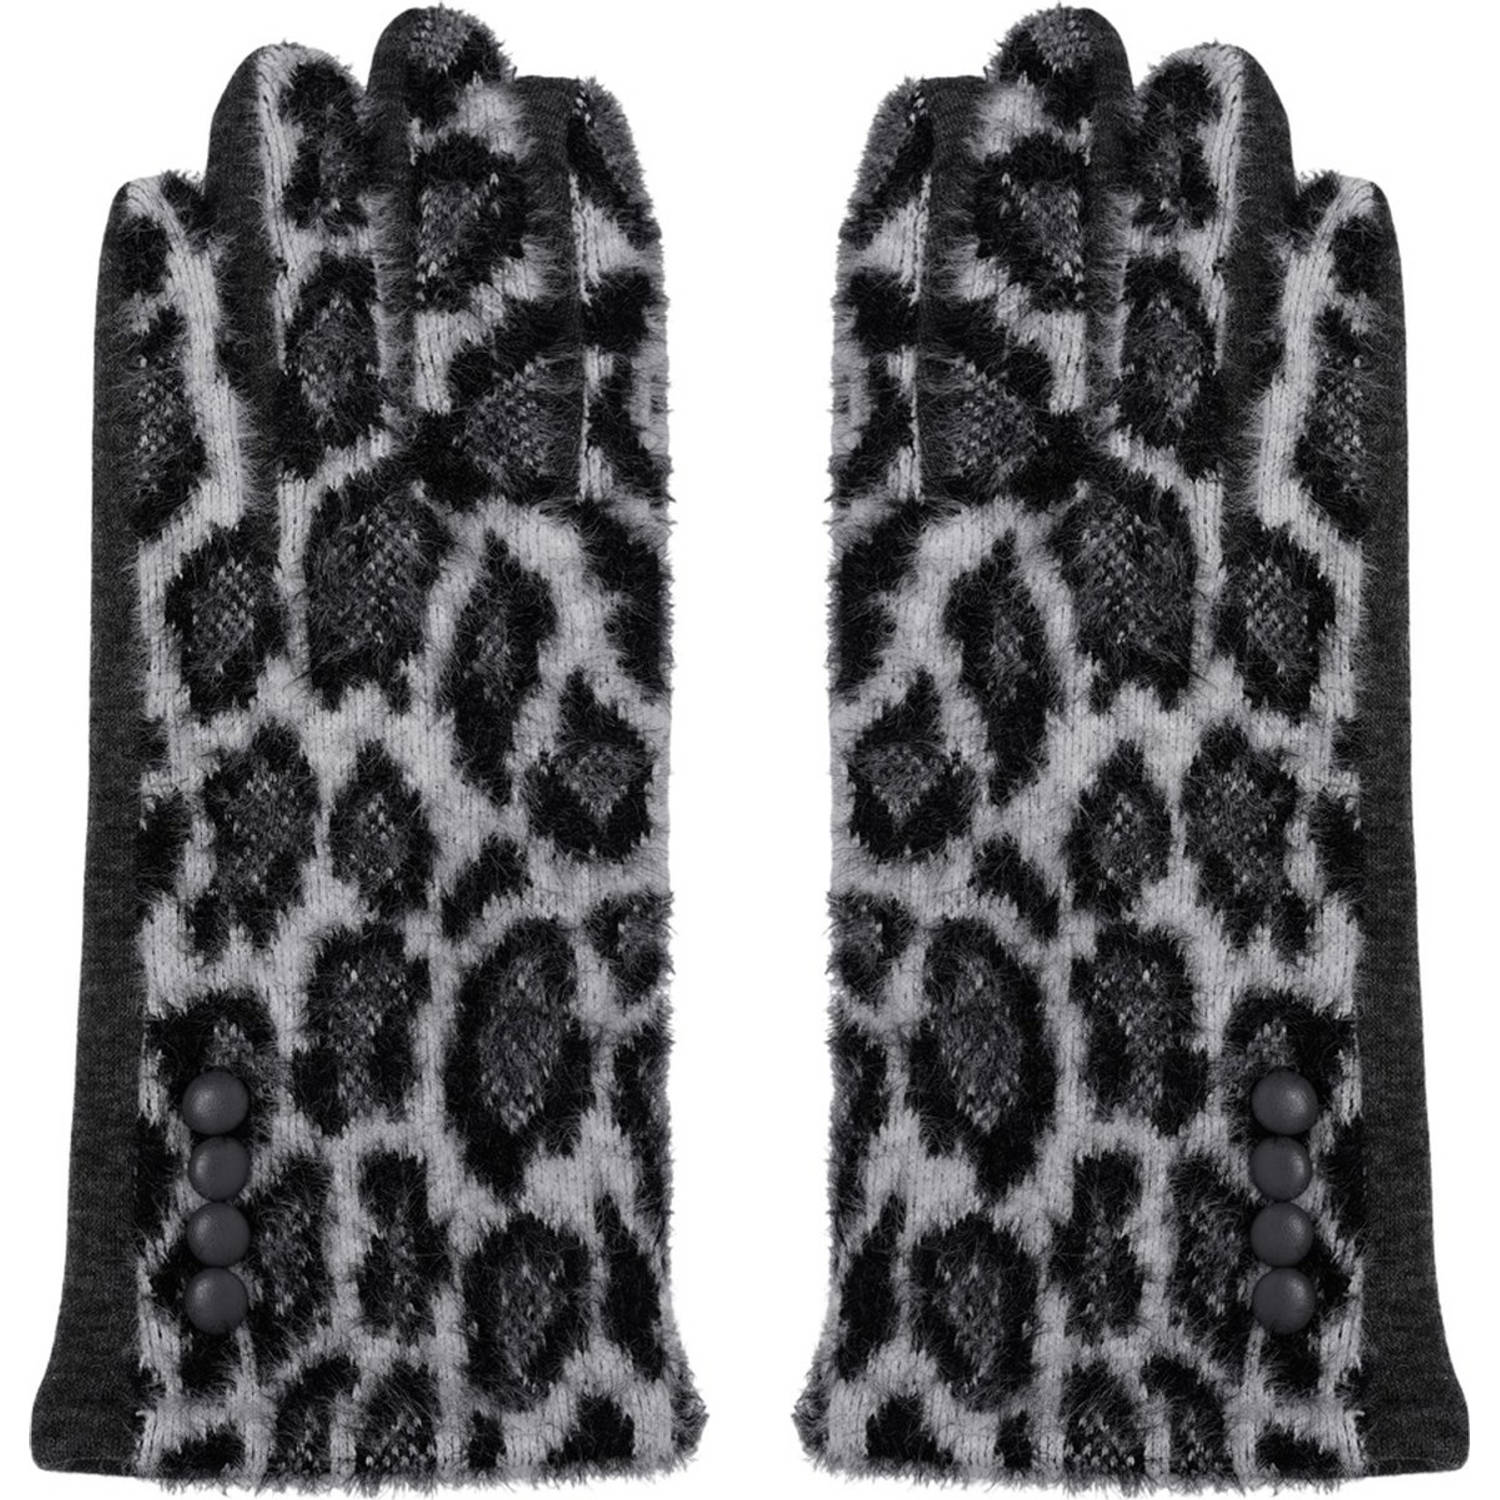 Handschoenen Dames panterprint Handschoenen Warm Touch Grijs - Trendy handschoenen voor winter look - handschoenen met